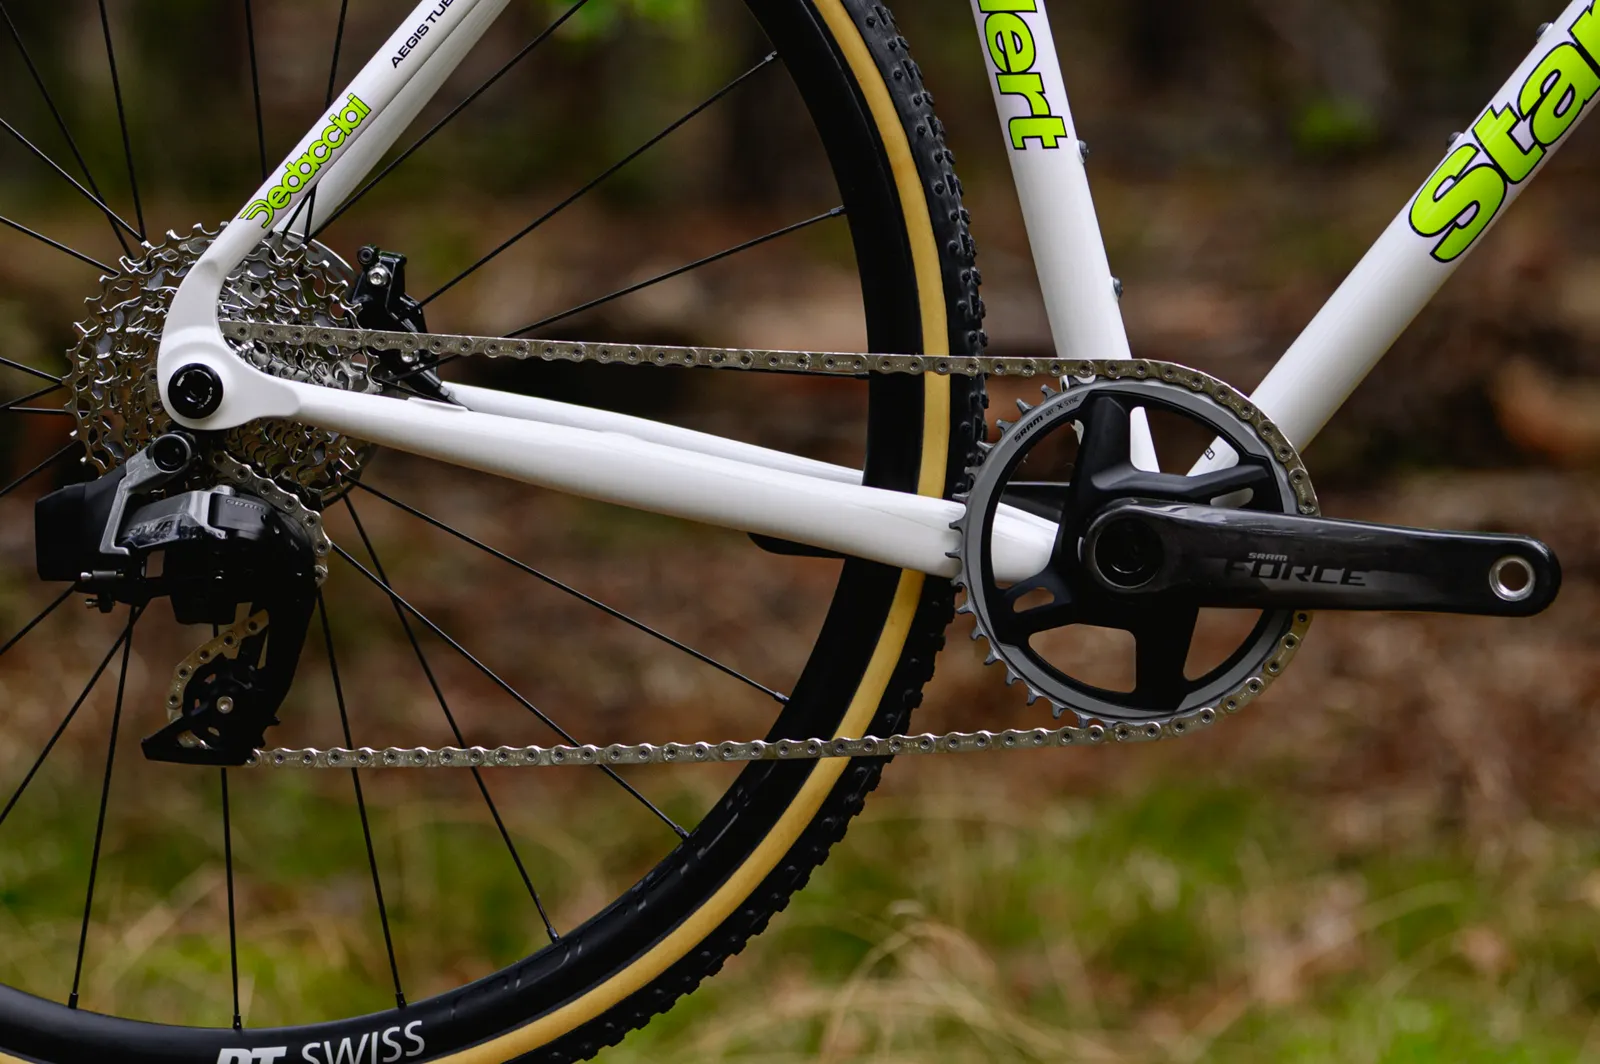 Standert Stichsäge Cyclocross Bikes Made from Aluminium